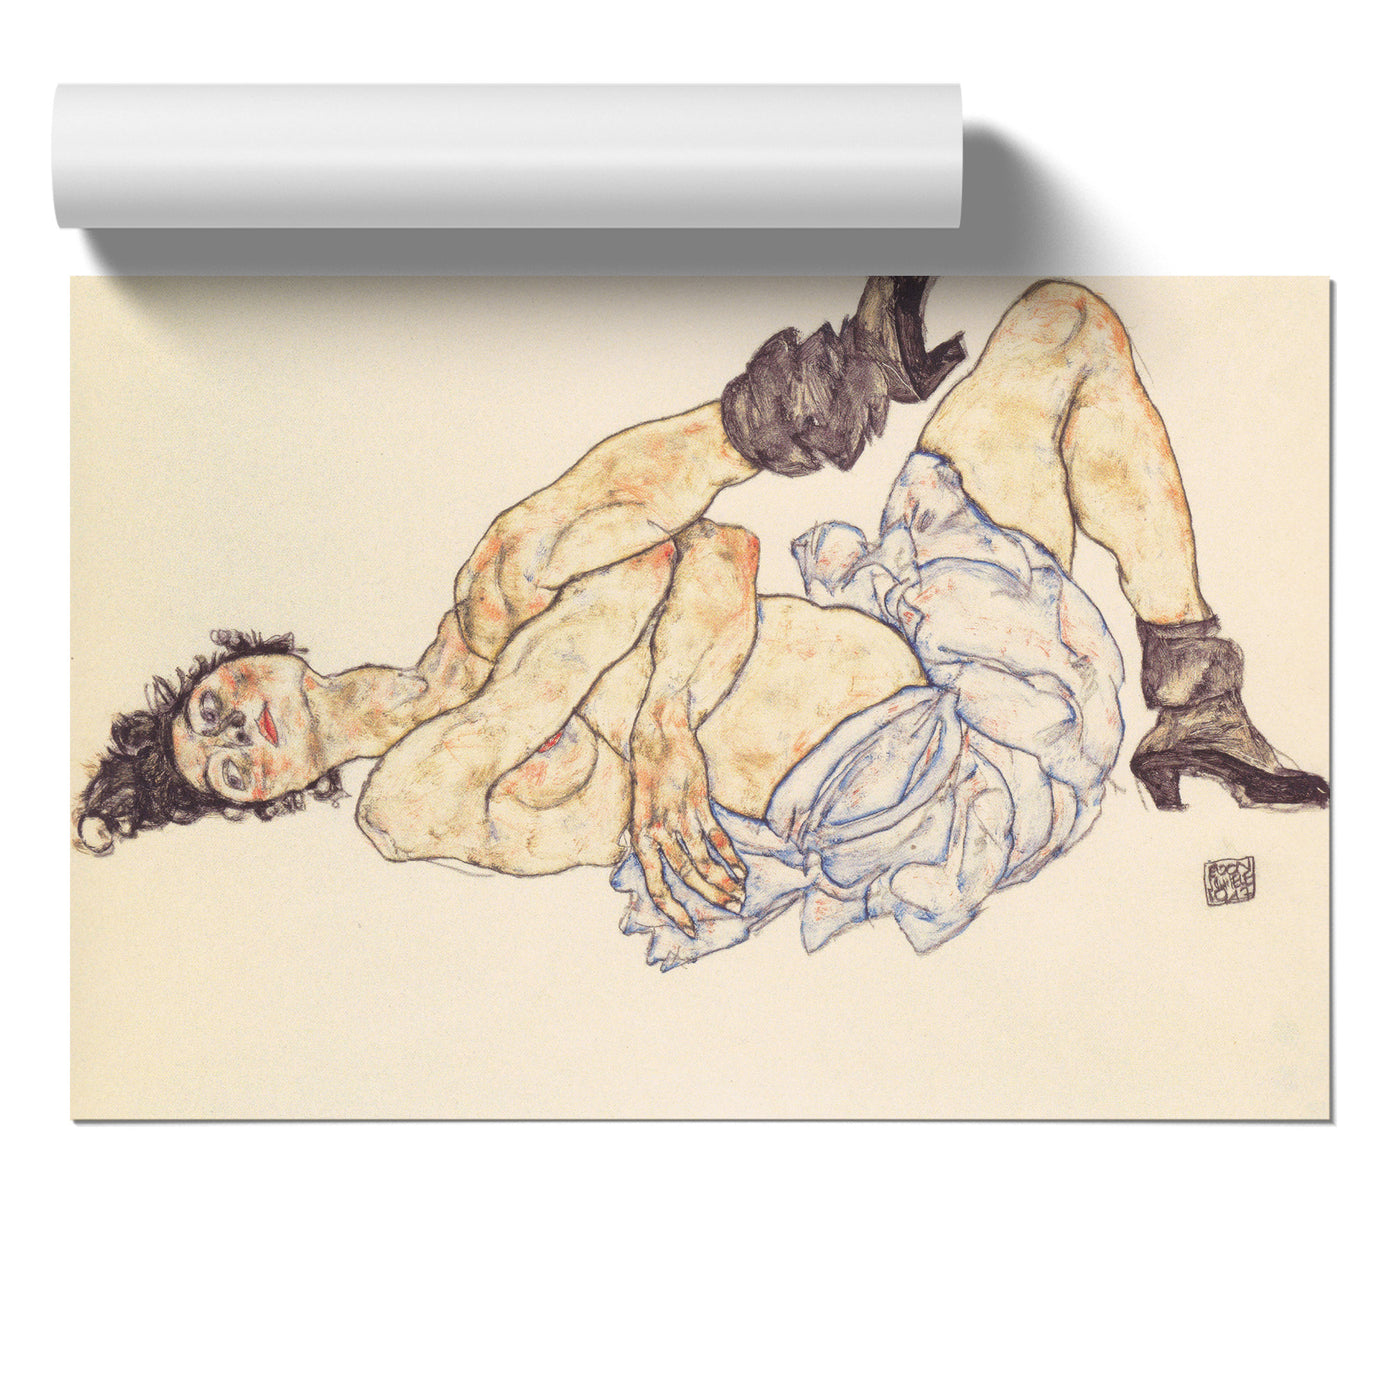 Portrait Of A Woman Vol.5 By Egon Schiele